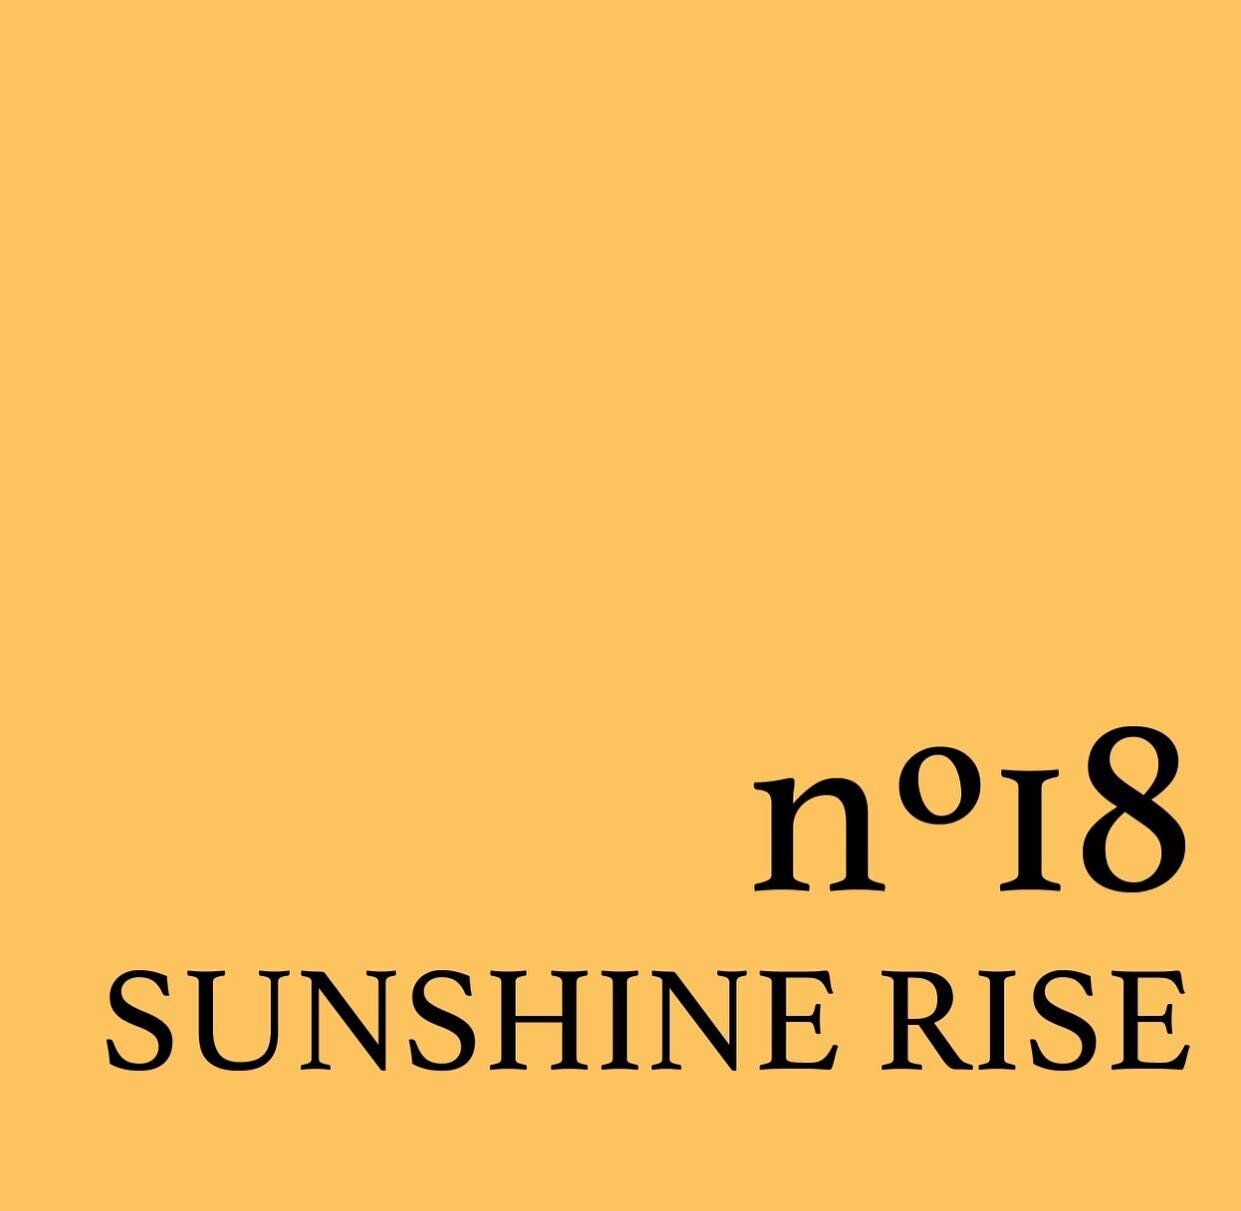 N&deg;18 SUNSHINE RISE 🌞
Kom helemaal in de summer vibe met sunshine rise!